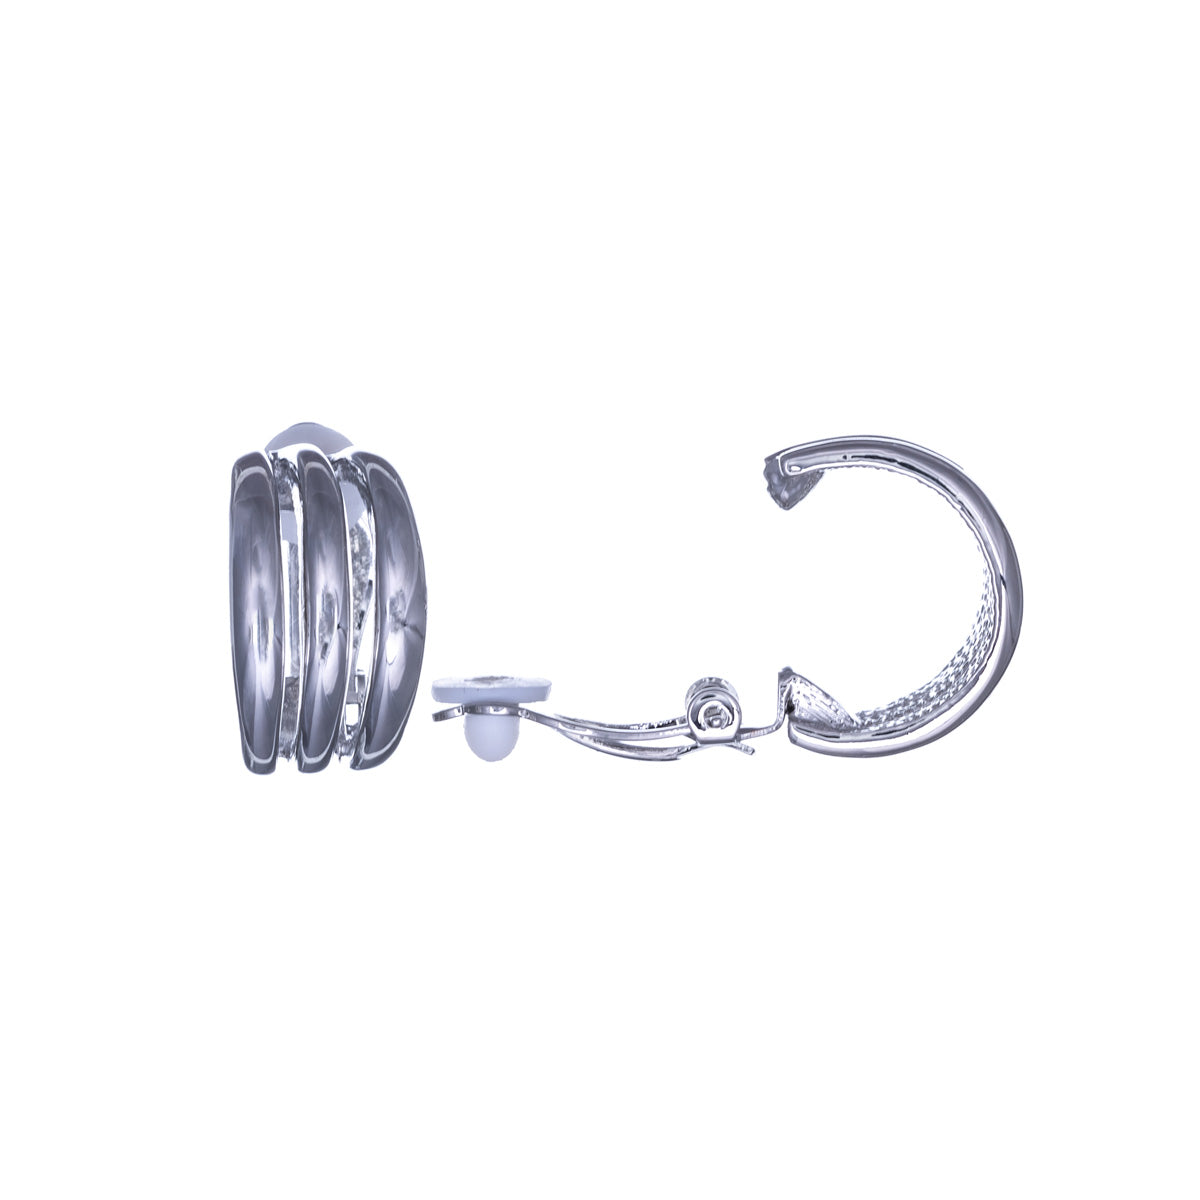 Böjda clipsörhängen med tre rader och halv ring